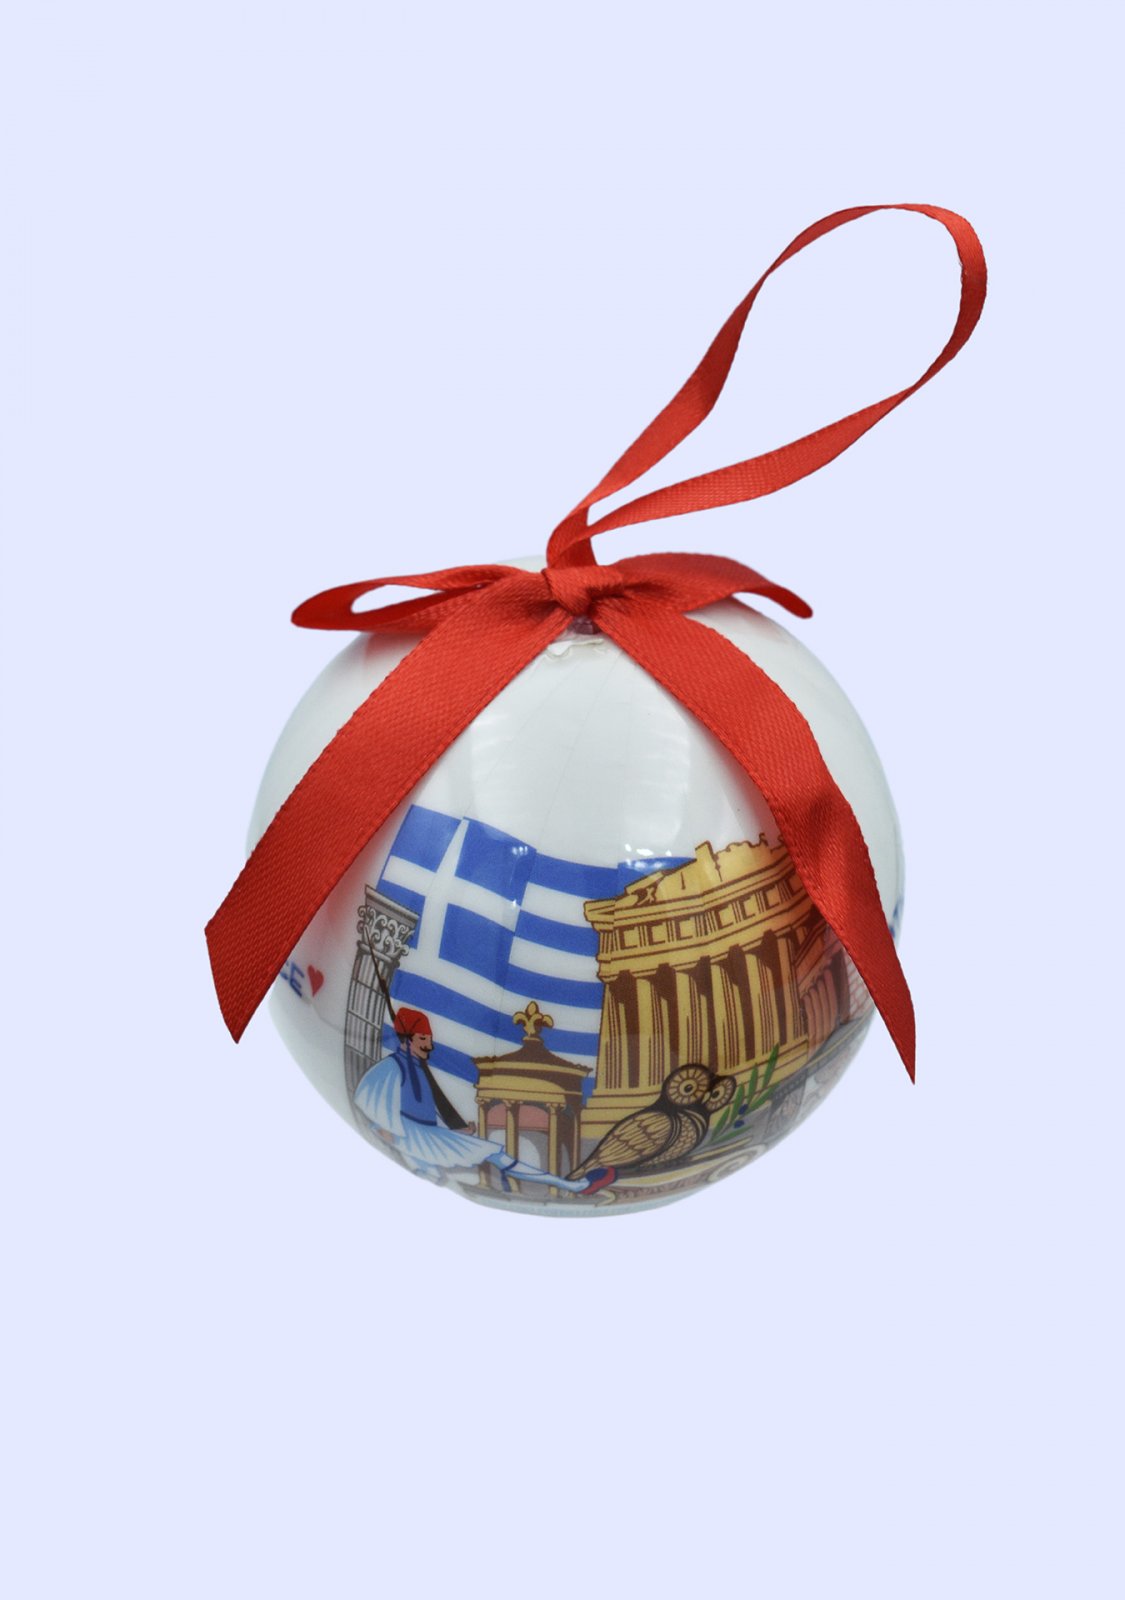 Christmas Tree Ball Parthenon Acropolis in a gift box